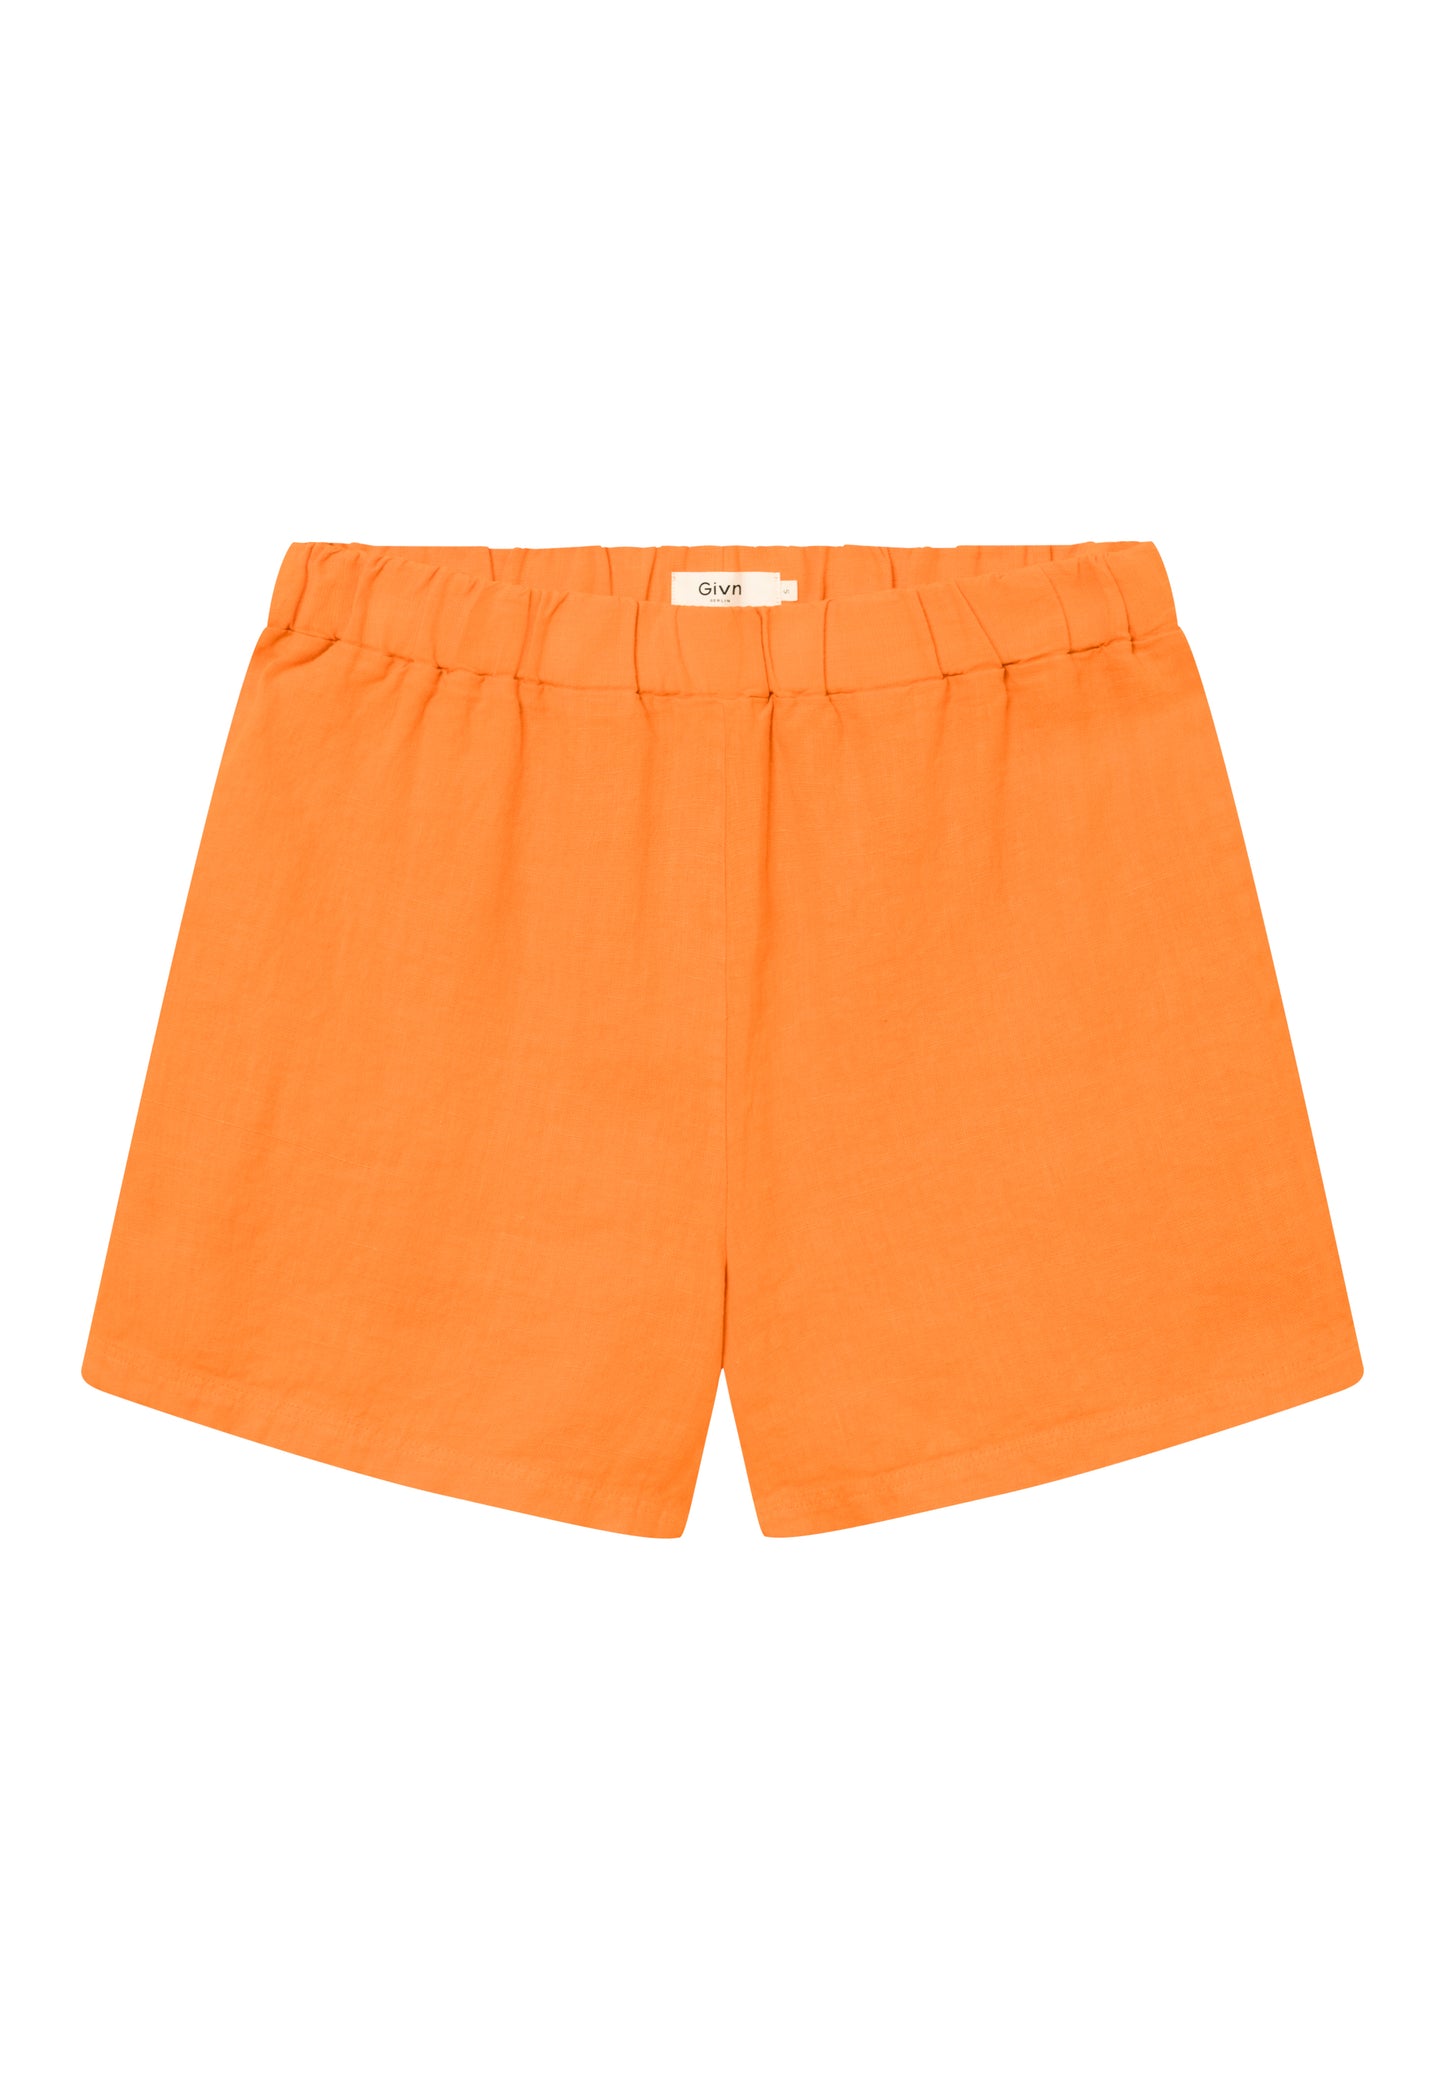 GIVN BERLIN CLEO Leinen-Shorts, orange